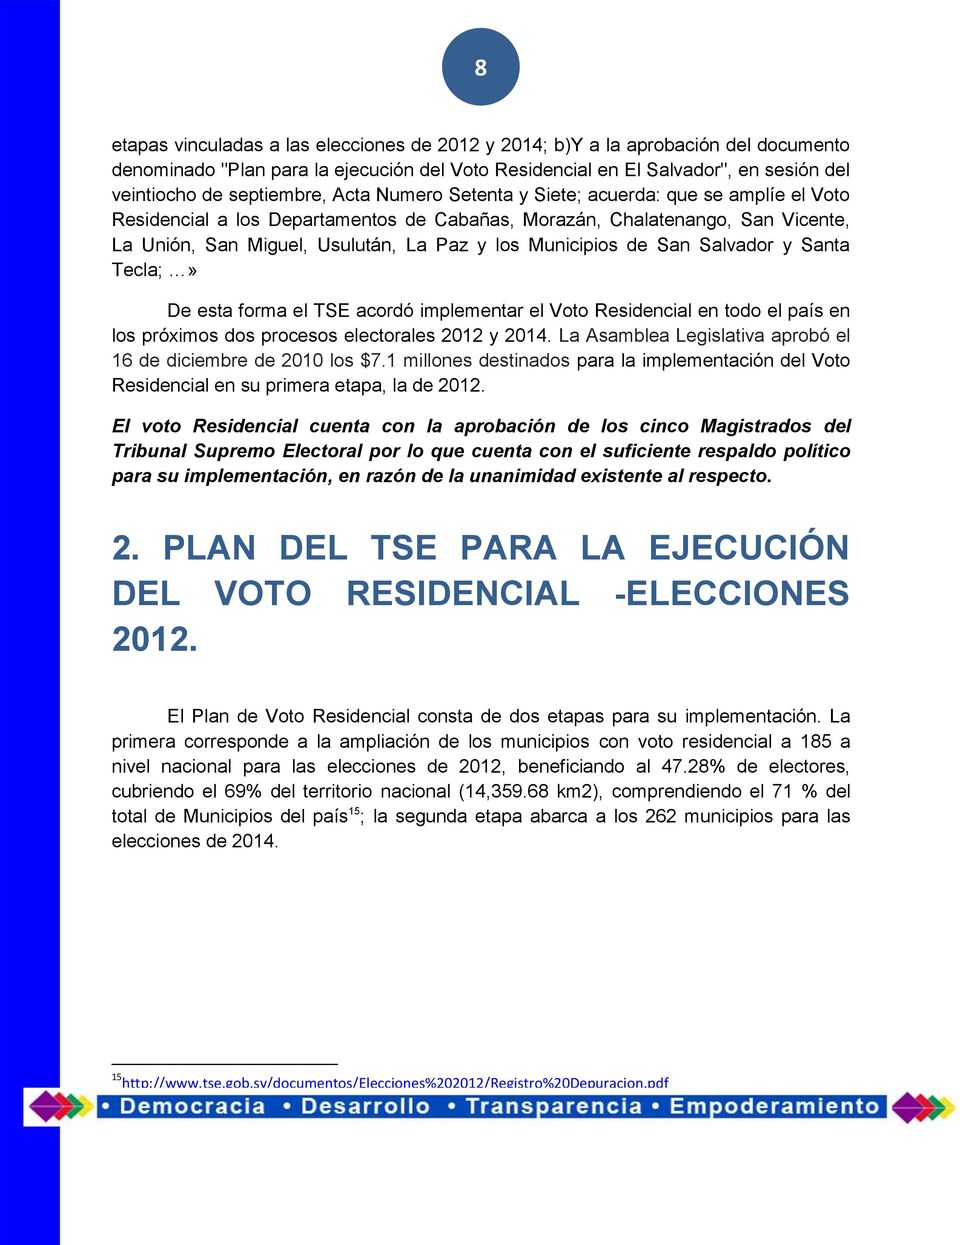 San Salvador y Santa Tecla;» De esta forma el TSE acordó implementar el Voto Residencial en todo el país en los próximos dos procesos electorales 2012 y 2014.